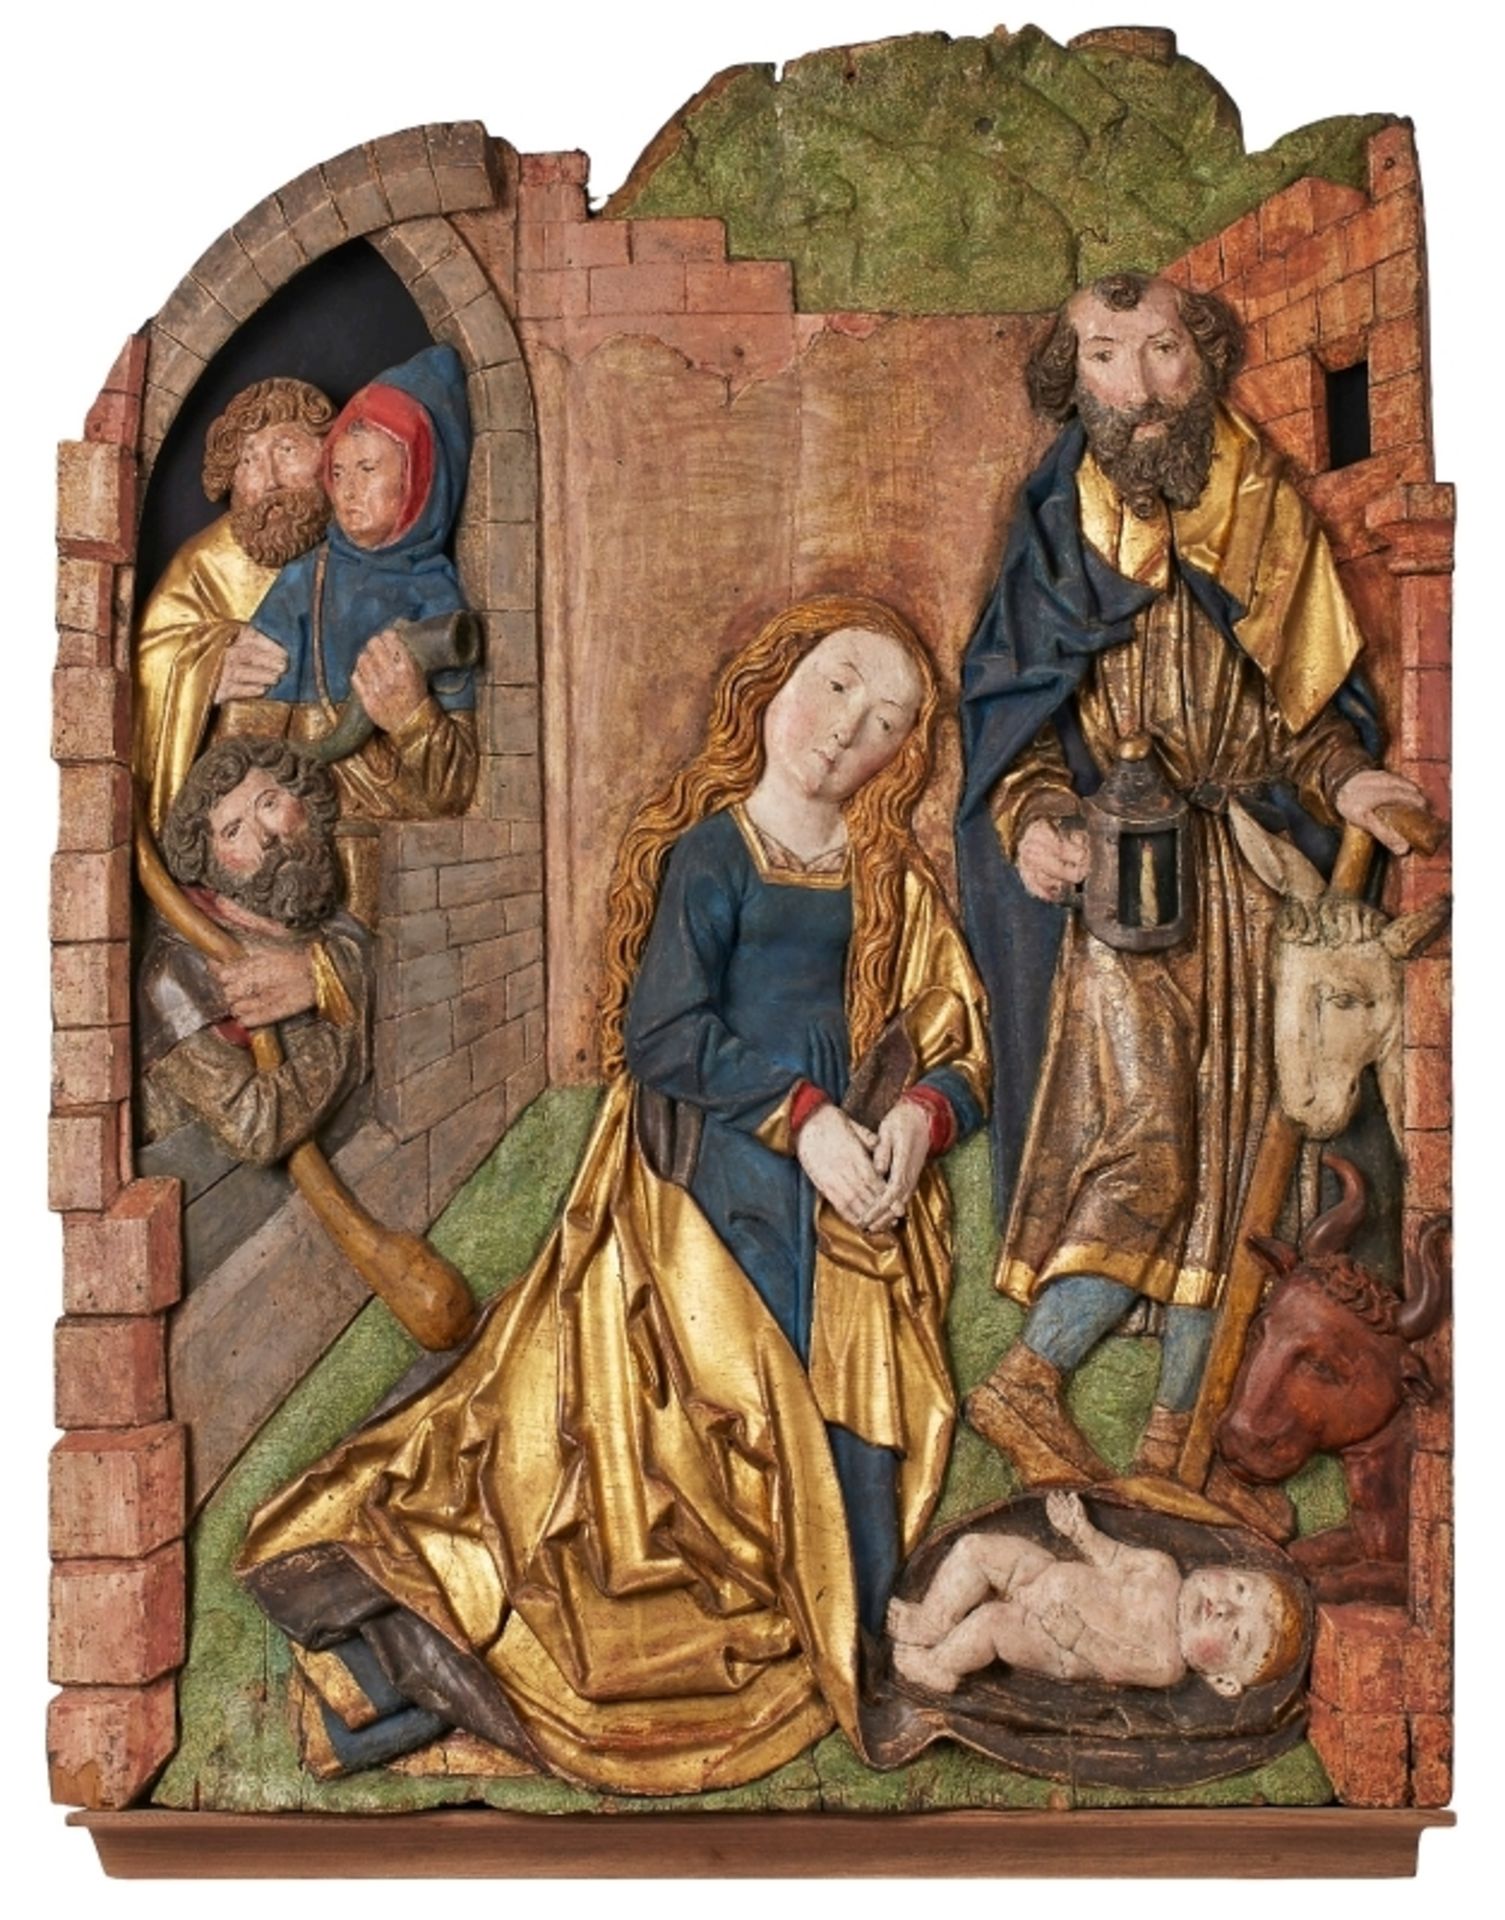 Gr. Relief "Geburt Christi", Umkreis Tilman Riemenschneider, Mainfranken um 1500.